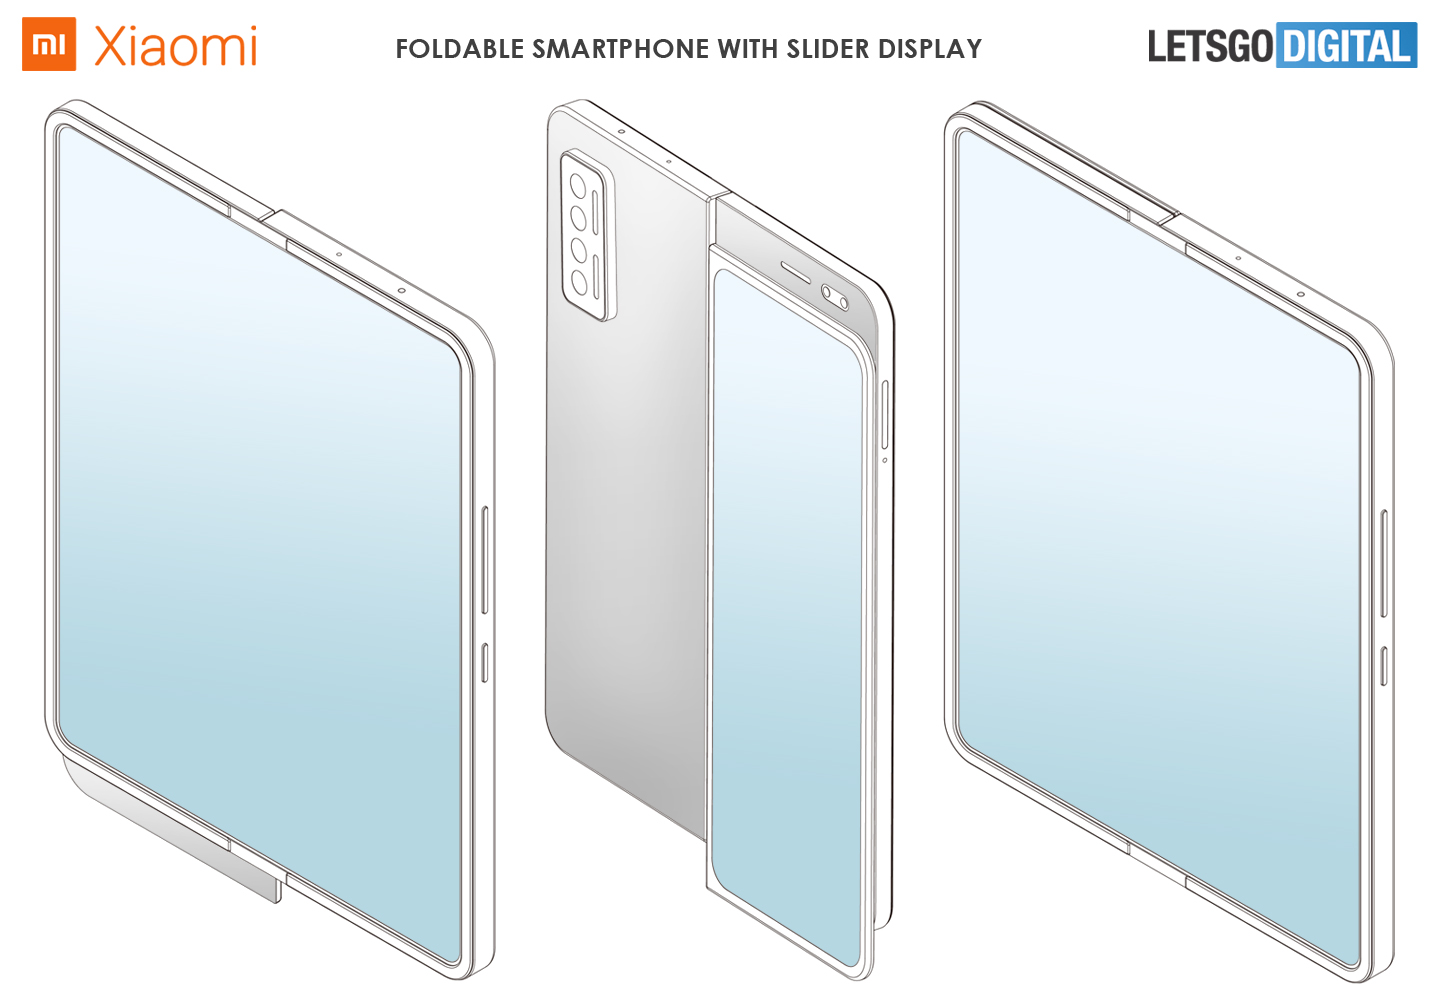 Под брендом Xiaomi запатентован гибкий дизайн смартфона-слайдера, который может выйти в линейке Mi Mix